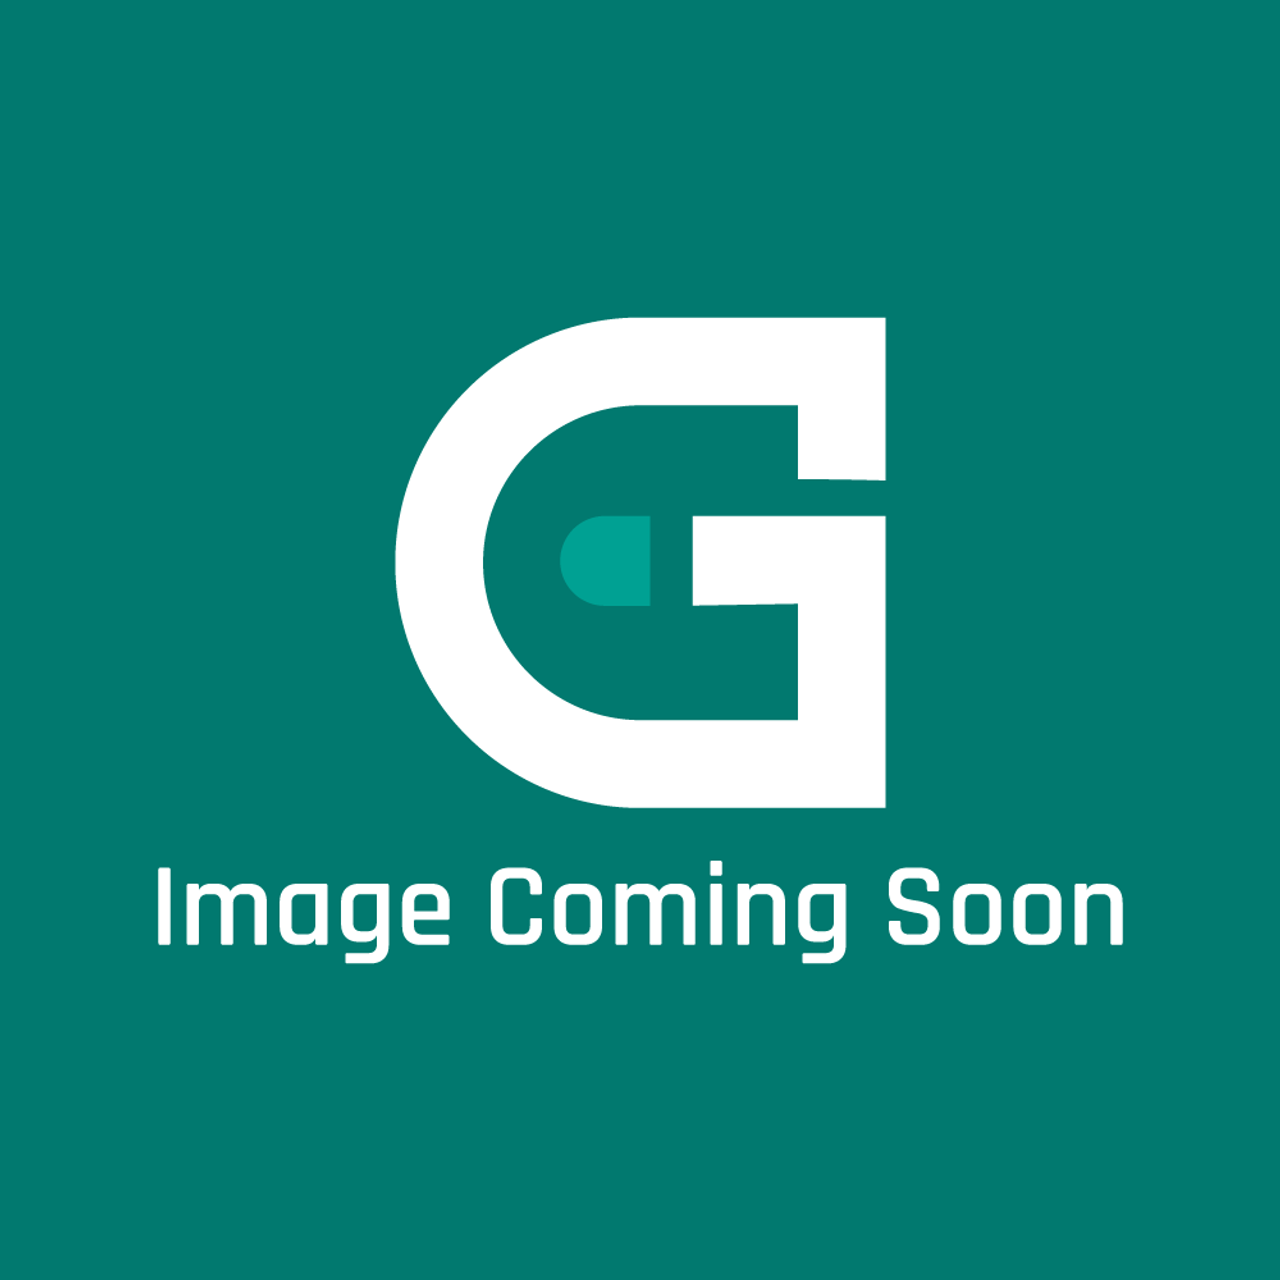 GE Appliances WH01X27855 - Screen Door - Image Coming Soon!